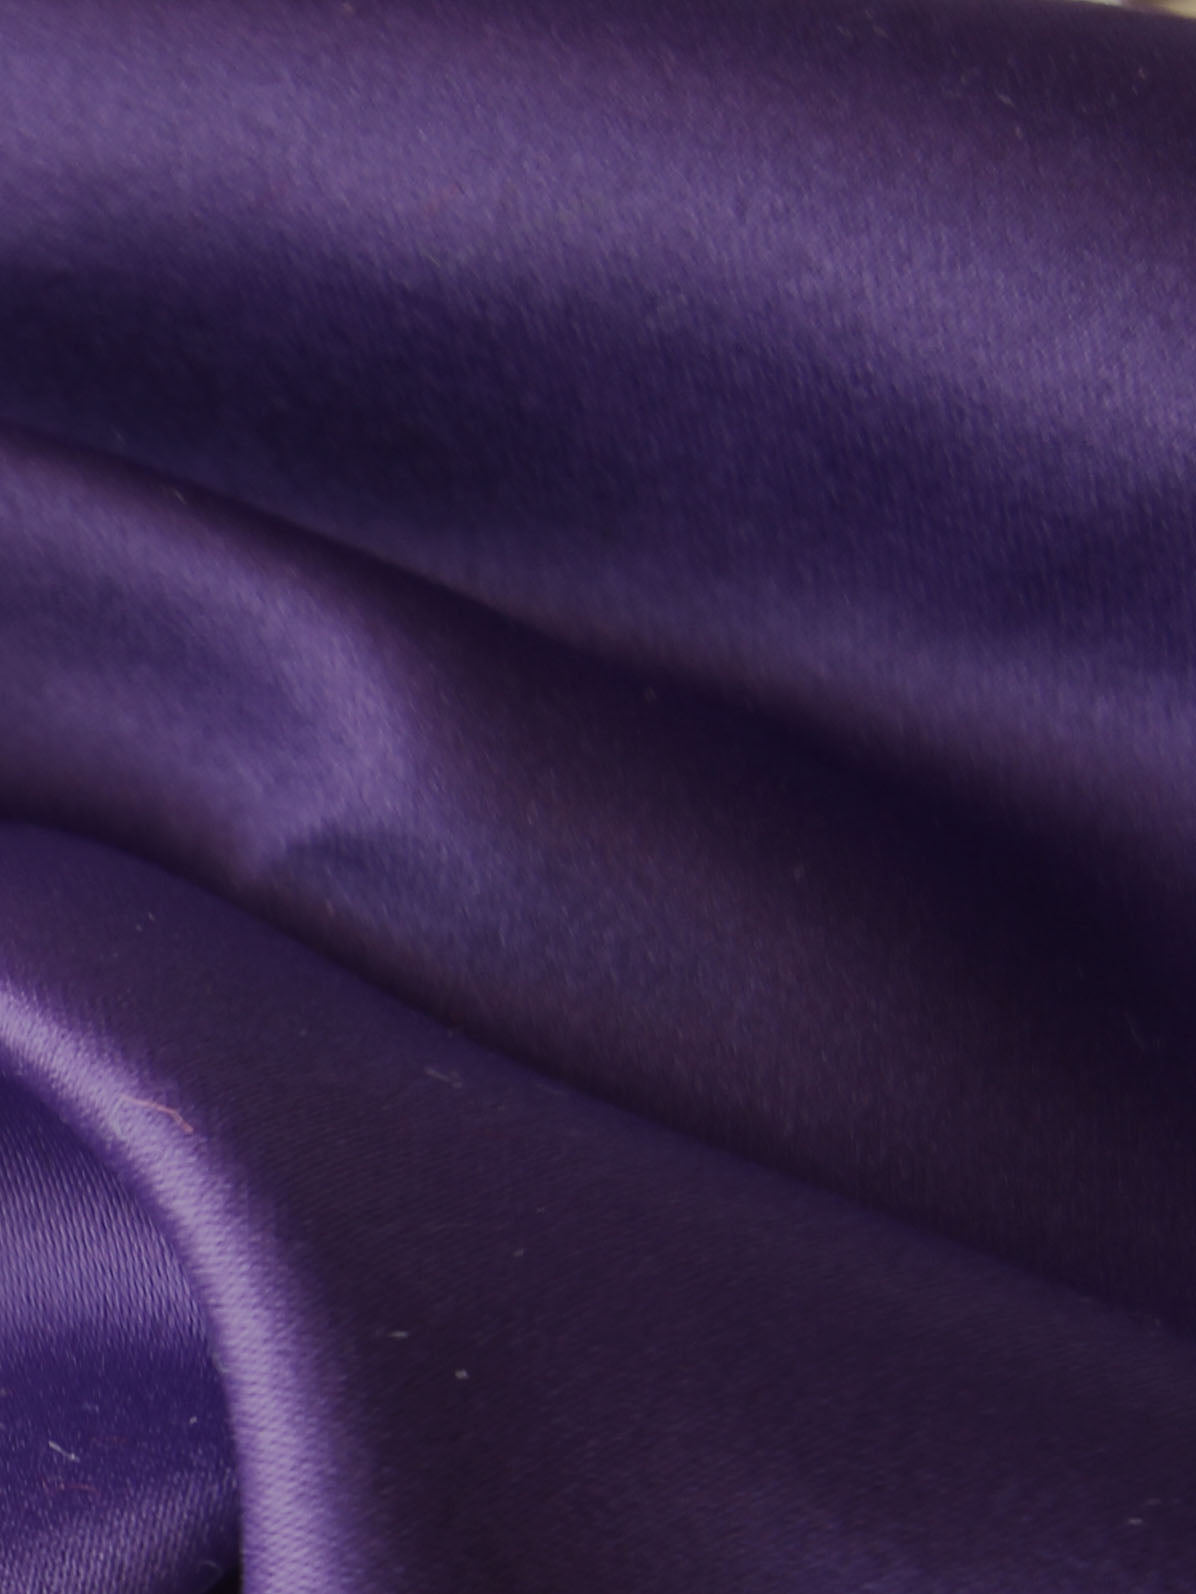 Silk Satin (137cm/54" Dark Colours) - Splendour